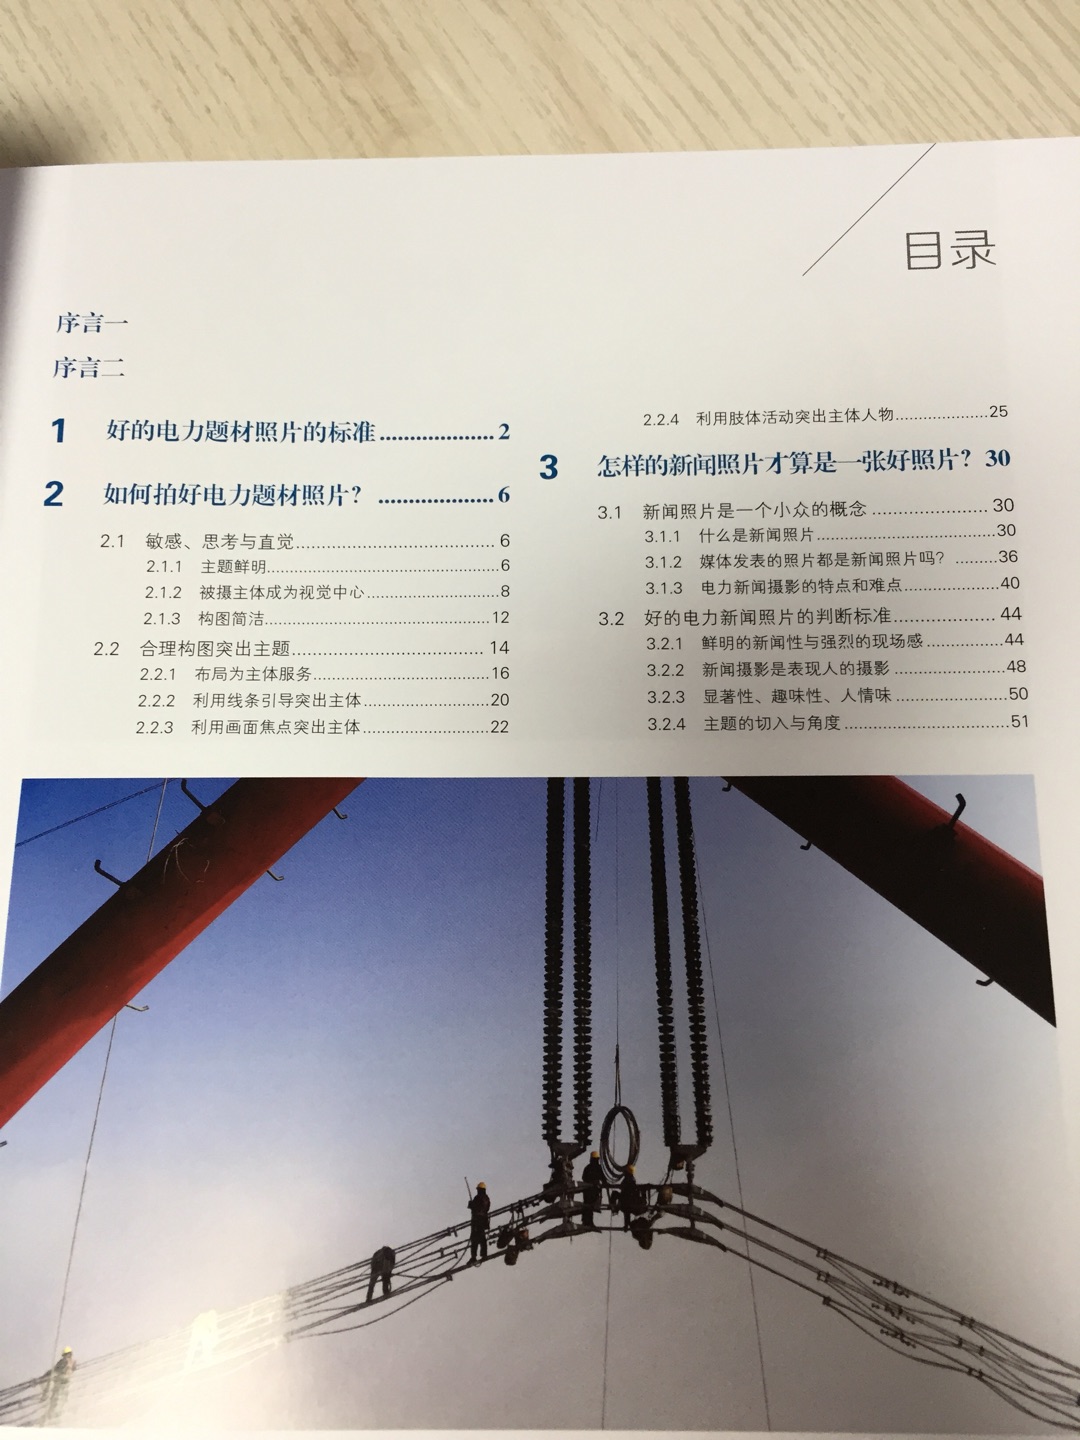 这个介绍写的有问题，这是一本电力行业摄影实践手册，很全面详实，有指导意义，跟介绍里写的北京煤改电工程没啥关系。